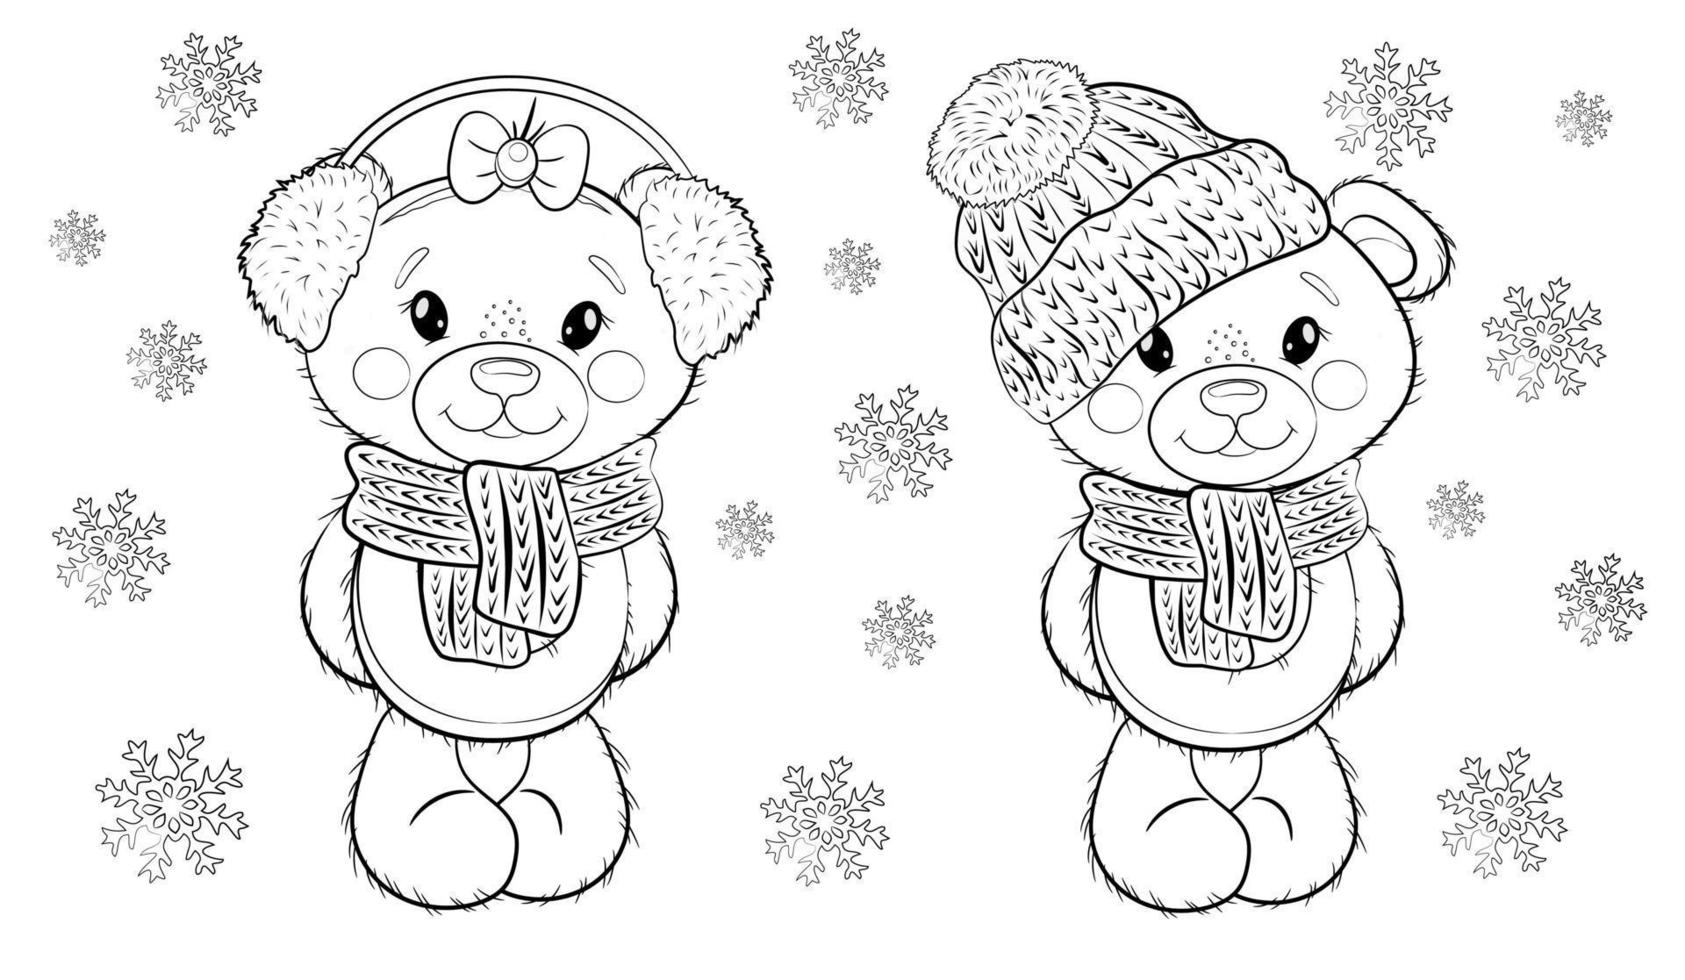 jul målarbok söta tecknade nallebjörnsdockor i en hatt, pälshörlurar och halsdukar på en vit bakgrund med snöflingor. vektor illustration. målarbok.